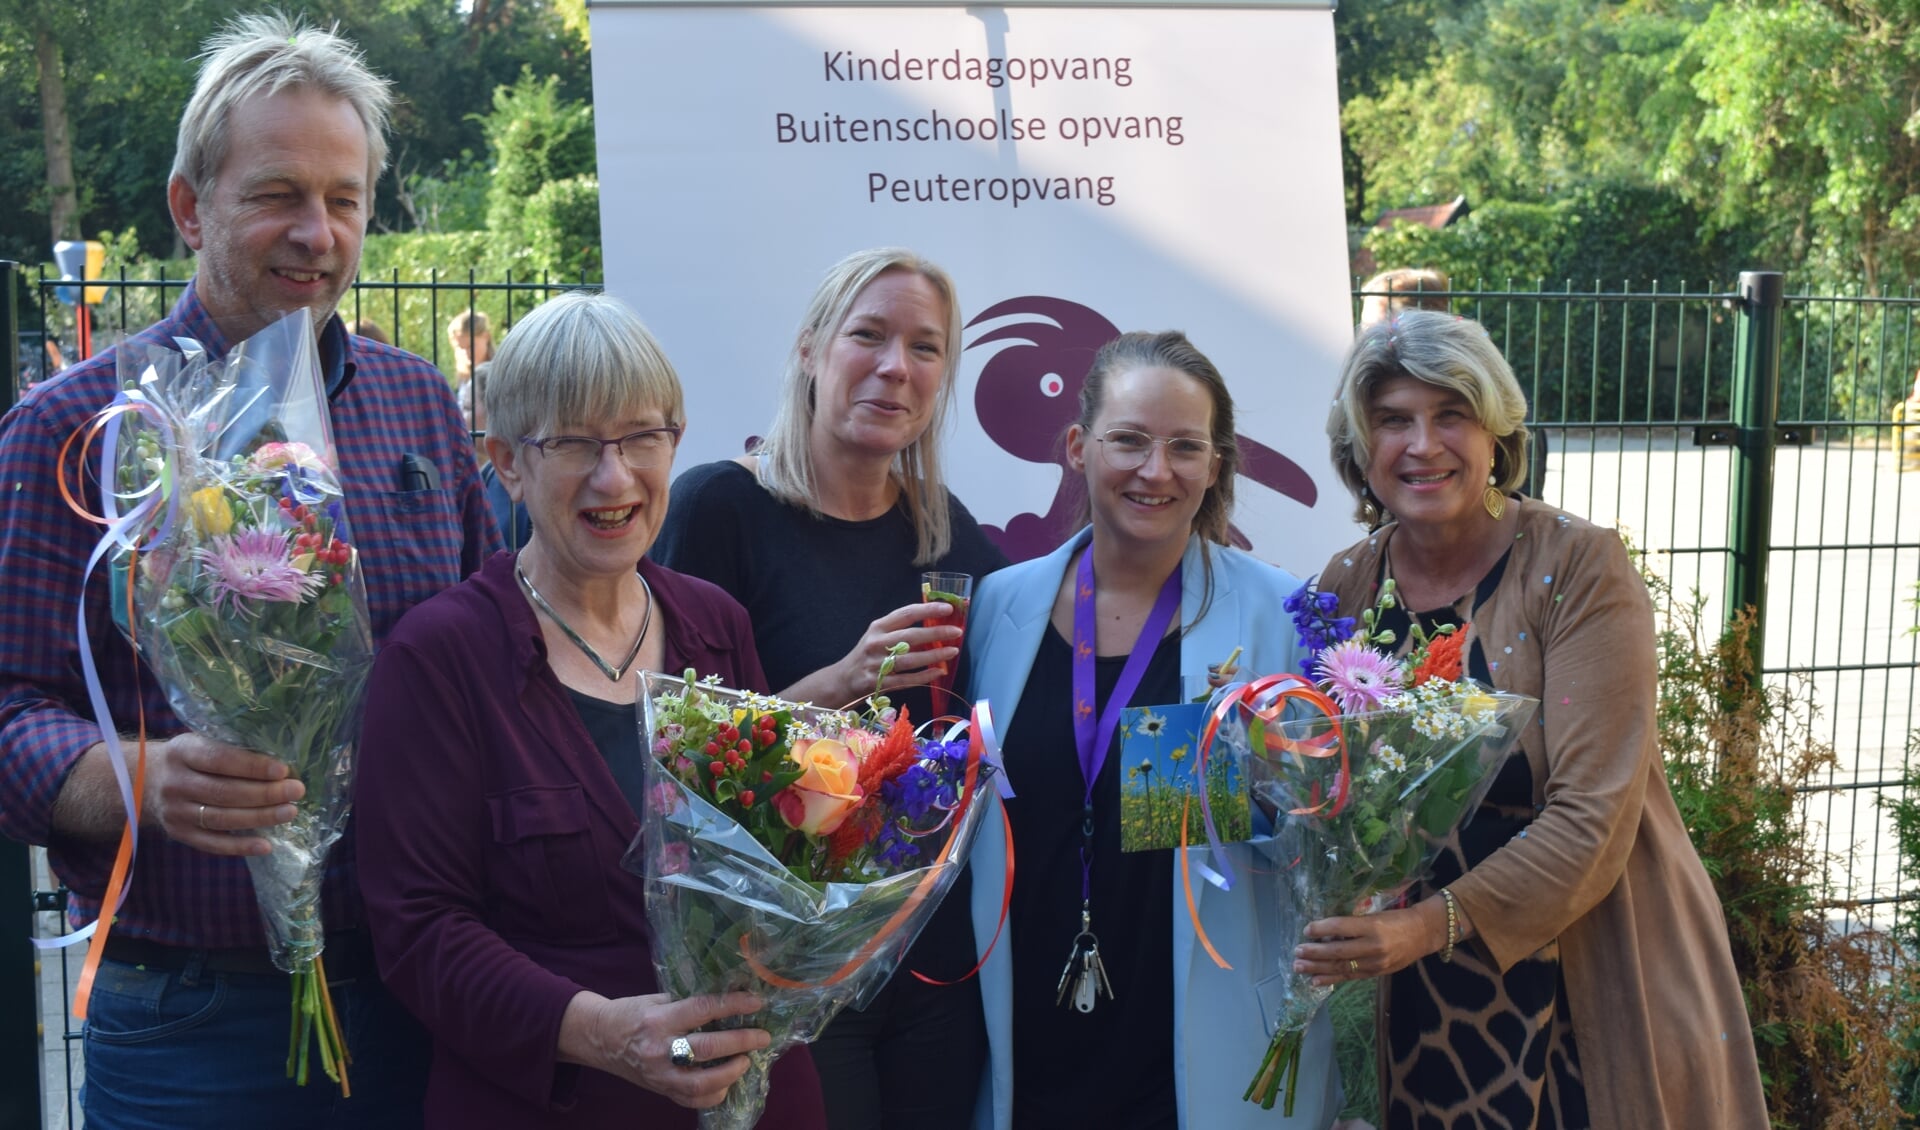  Wethouder Madeleine Bakker (r) opent het Kinderdagverblijf op de Van Dijckschool in Bilthoven. Links de directeur van de Van Dijckschool Rob van Maanen.